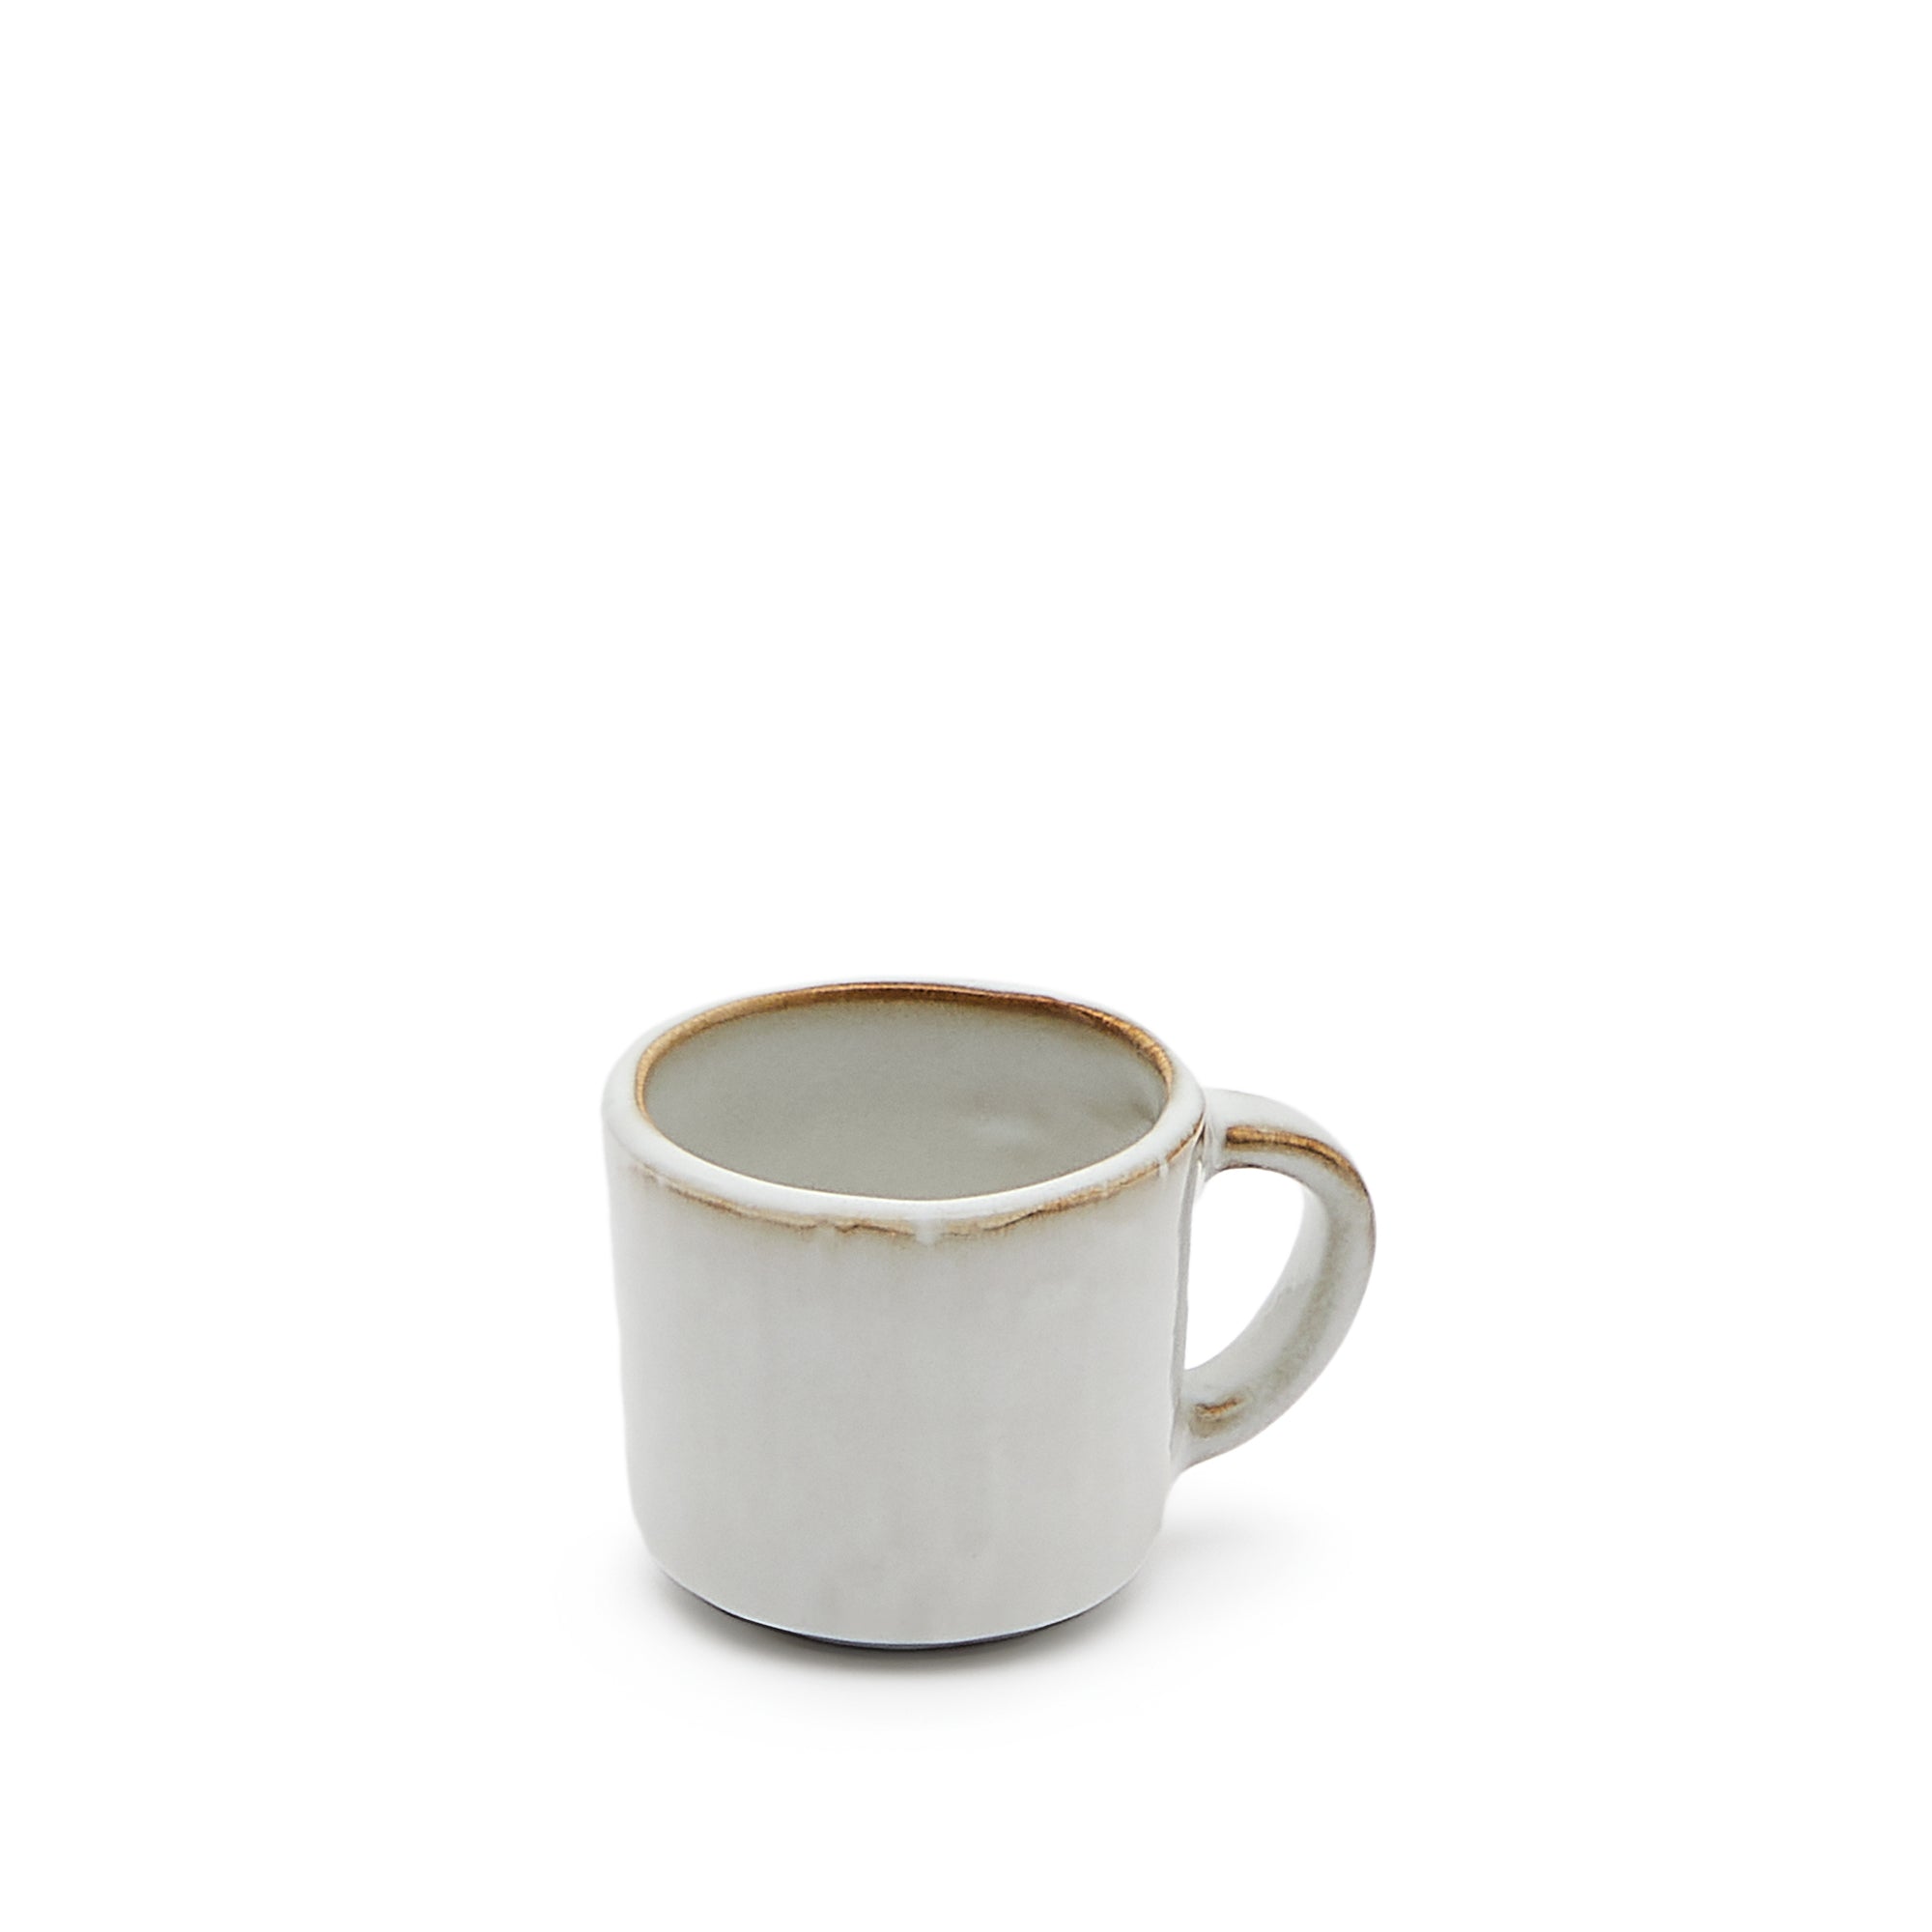 Serni white ceramic cup